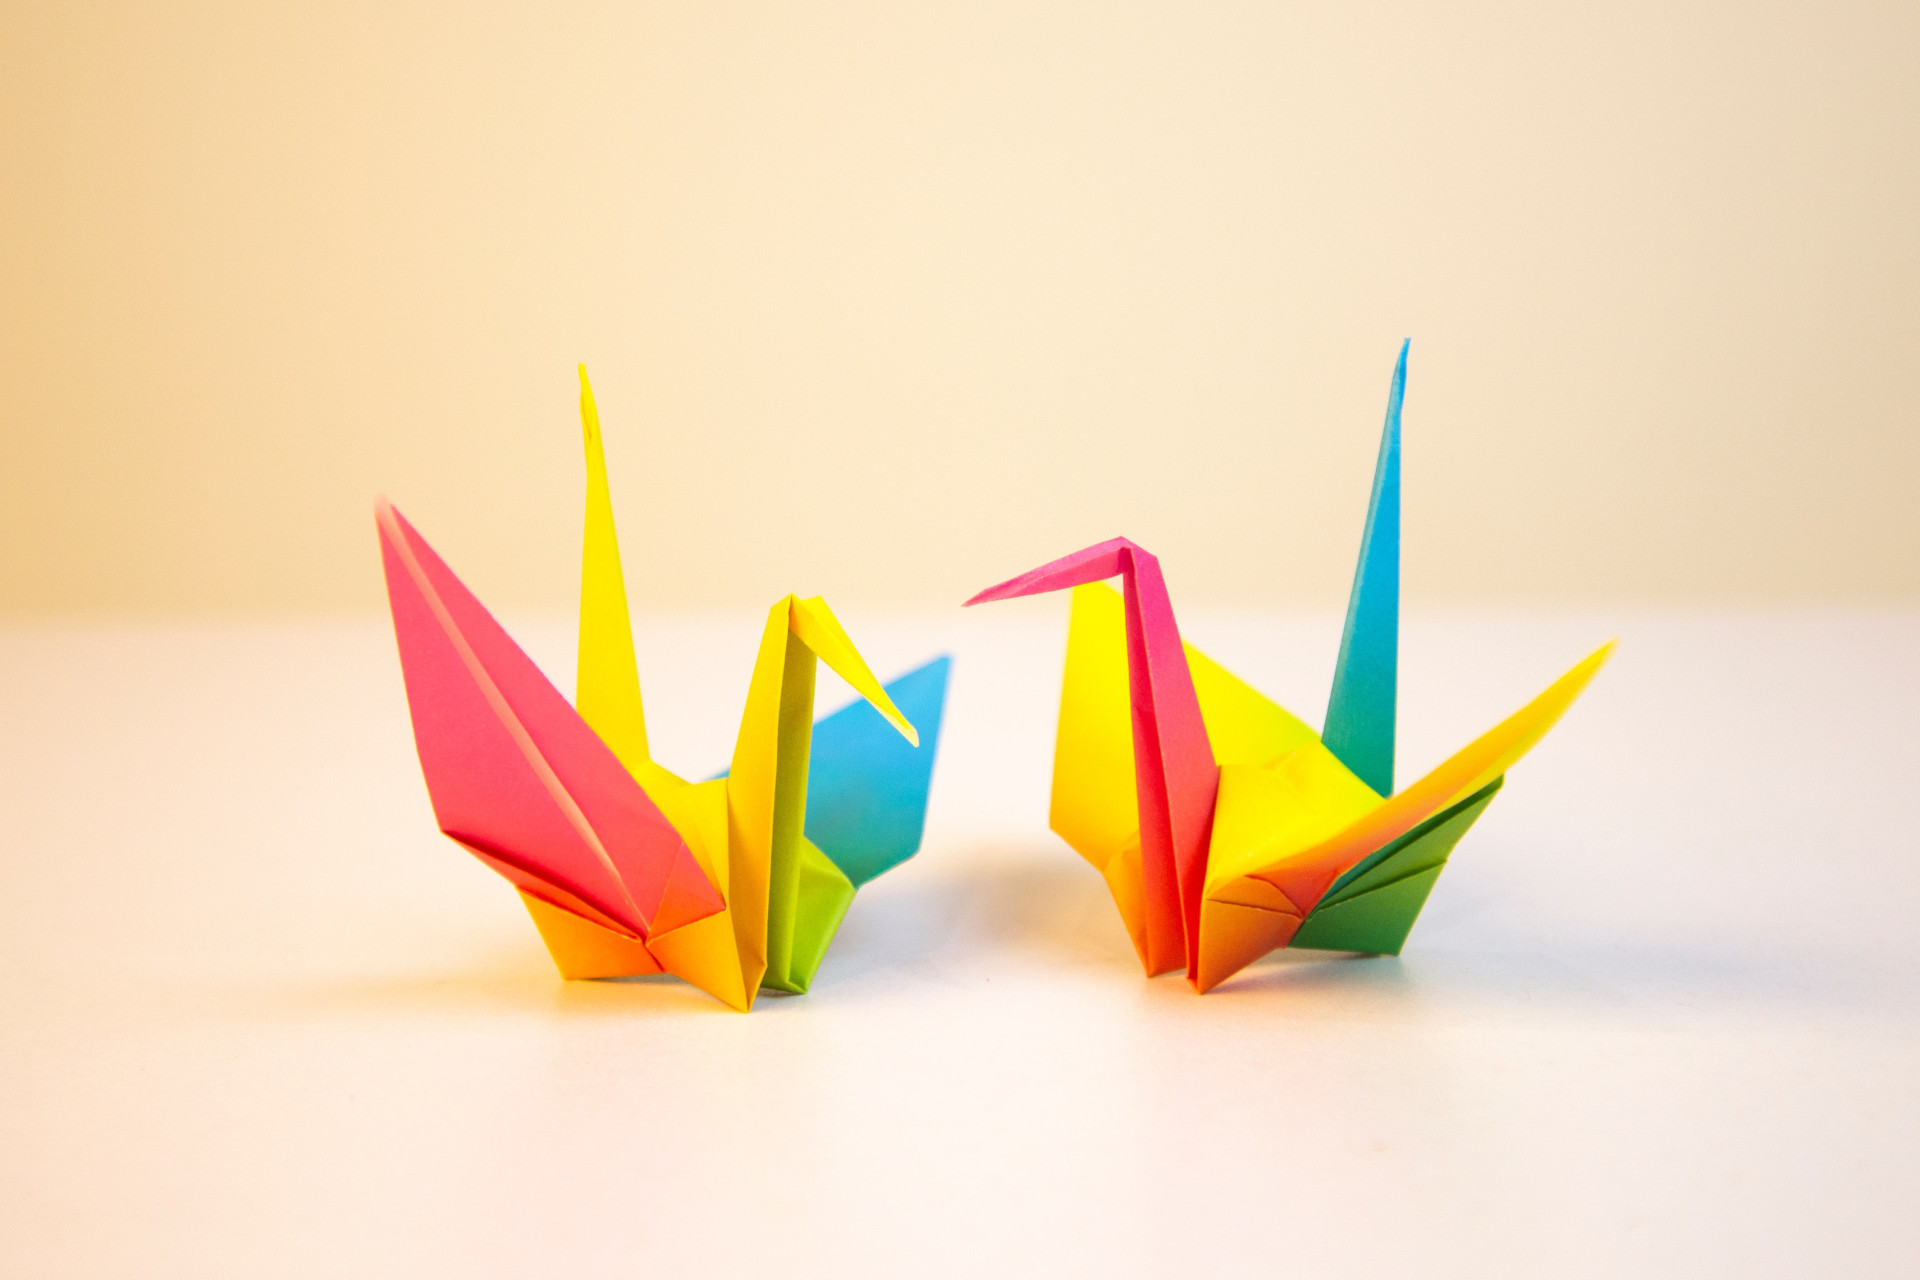 Deux signes en origami multicolores.